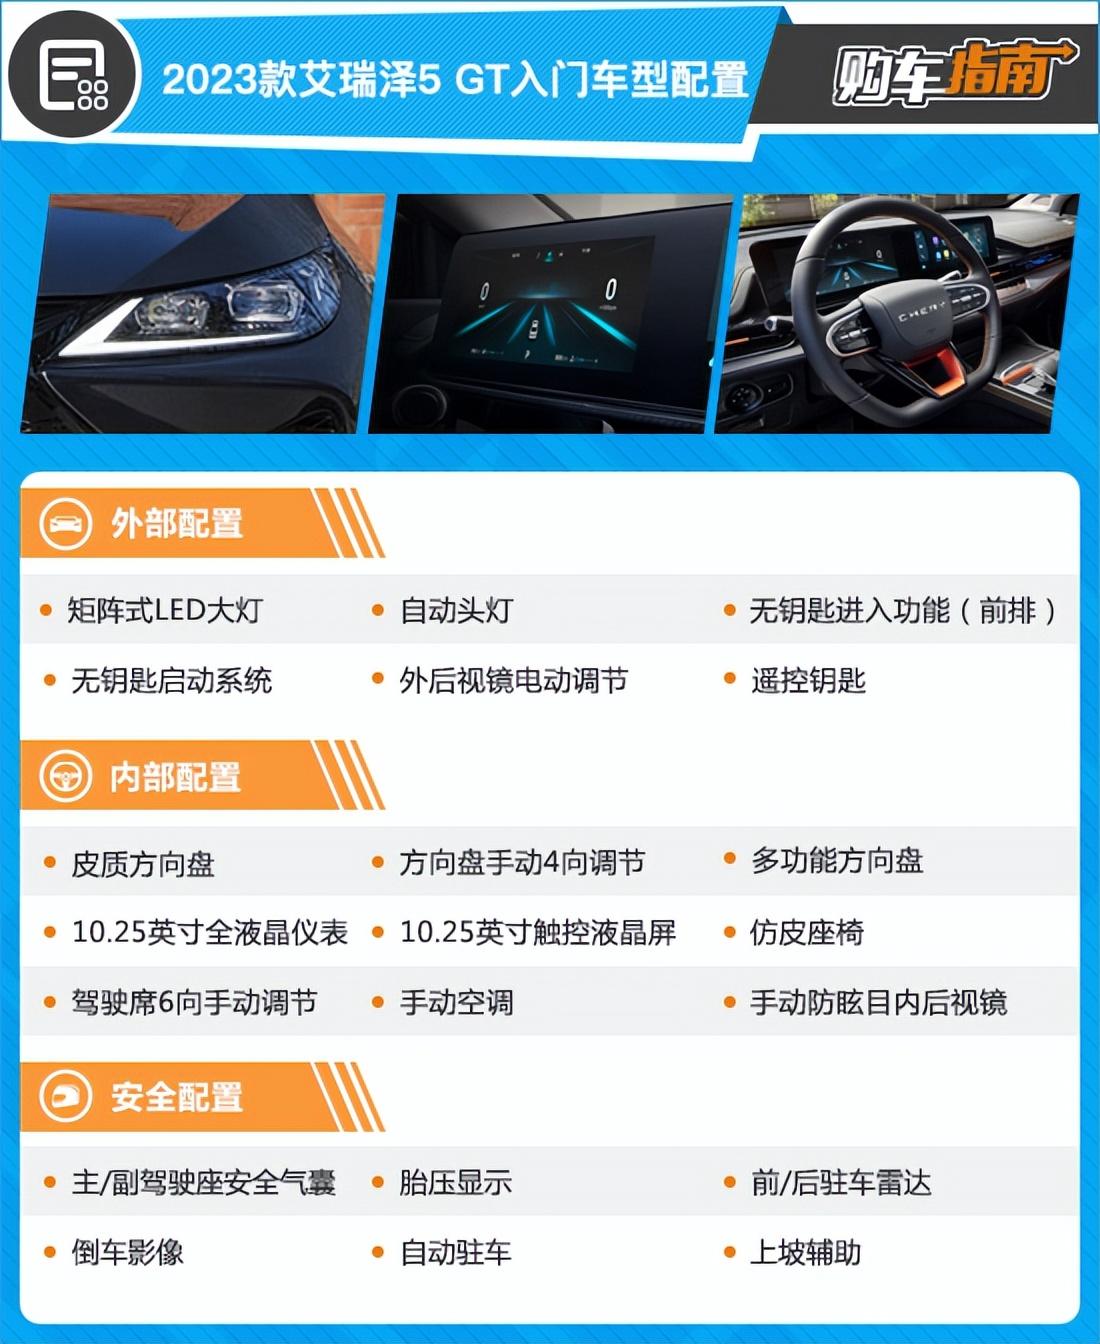 推荐1.5T CVT智 2023款艾瑞泽5 GT购车指南